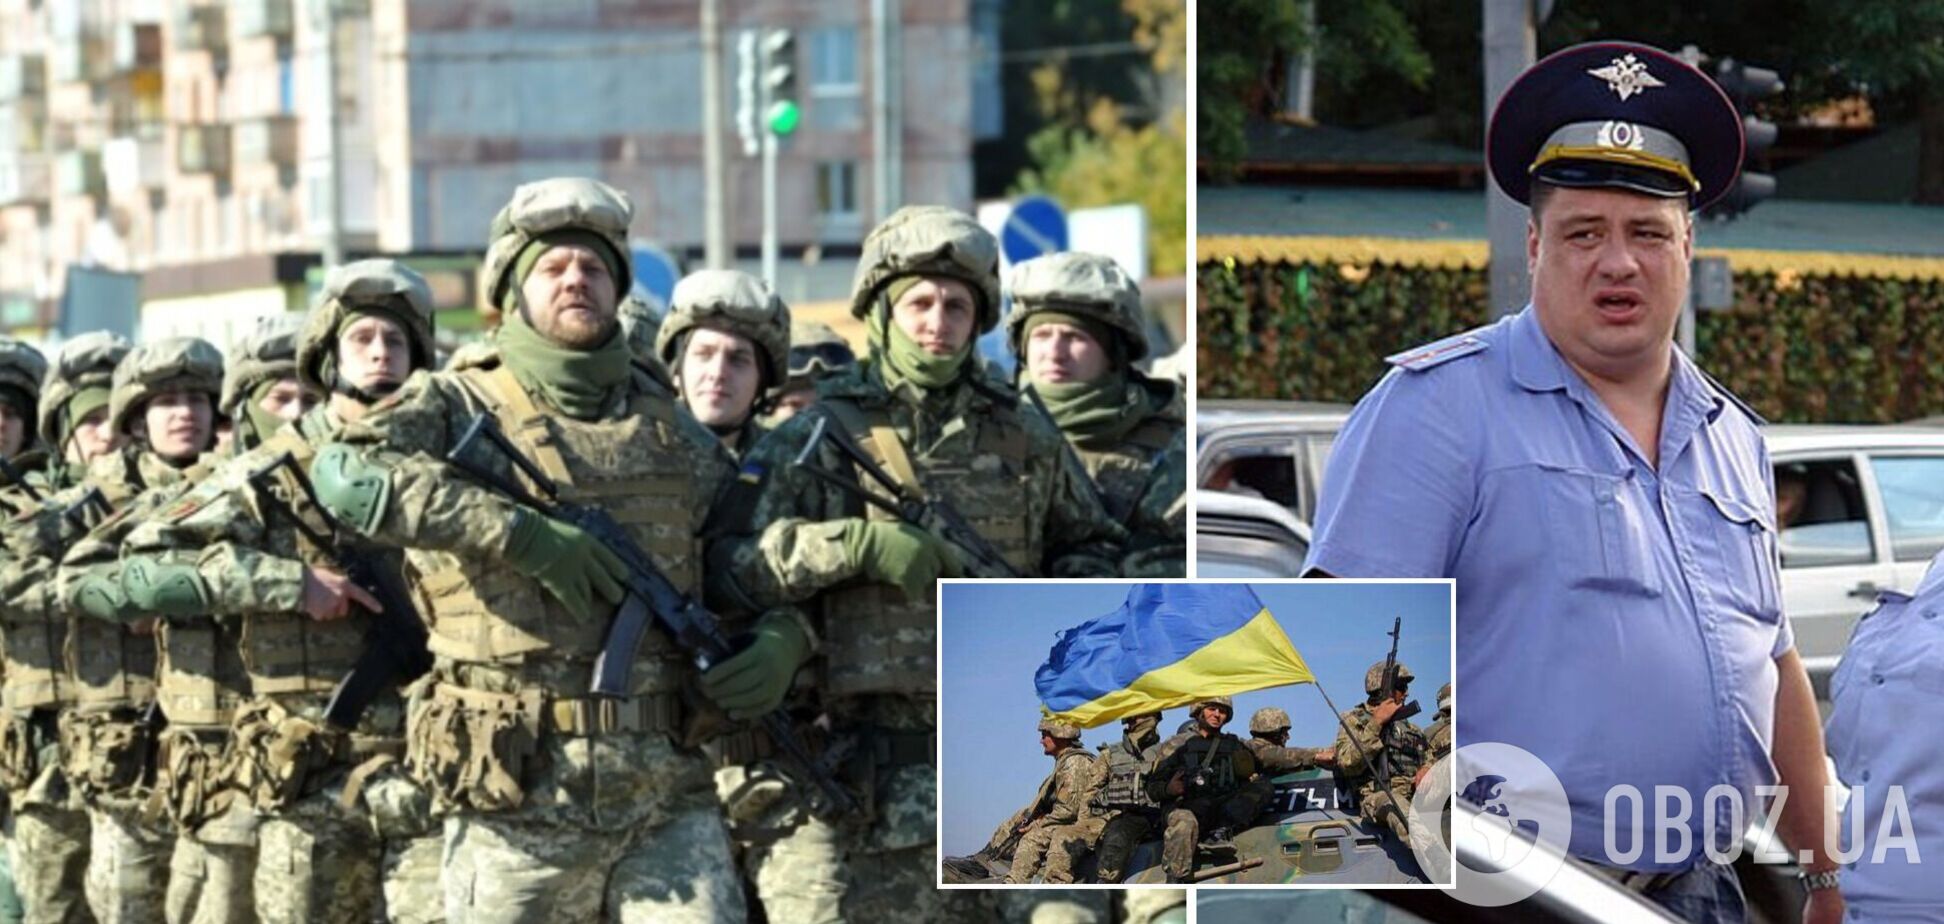 'Проситесь сразу в плен': российских полицейских планируют перебросить на войну в Украину. Аудио